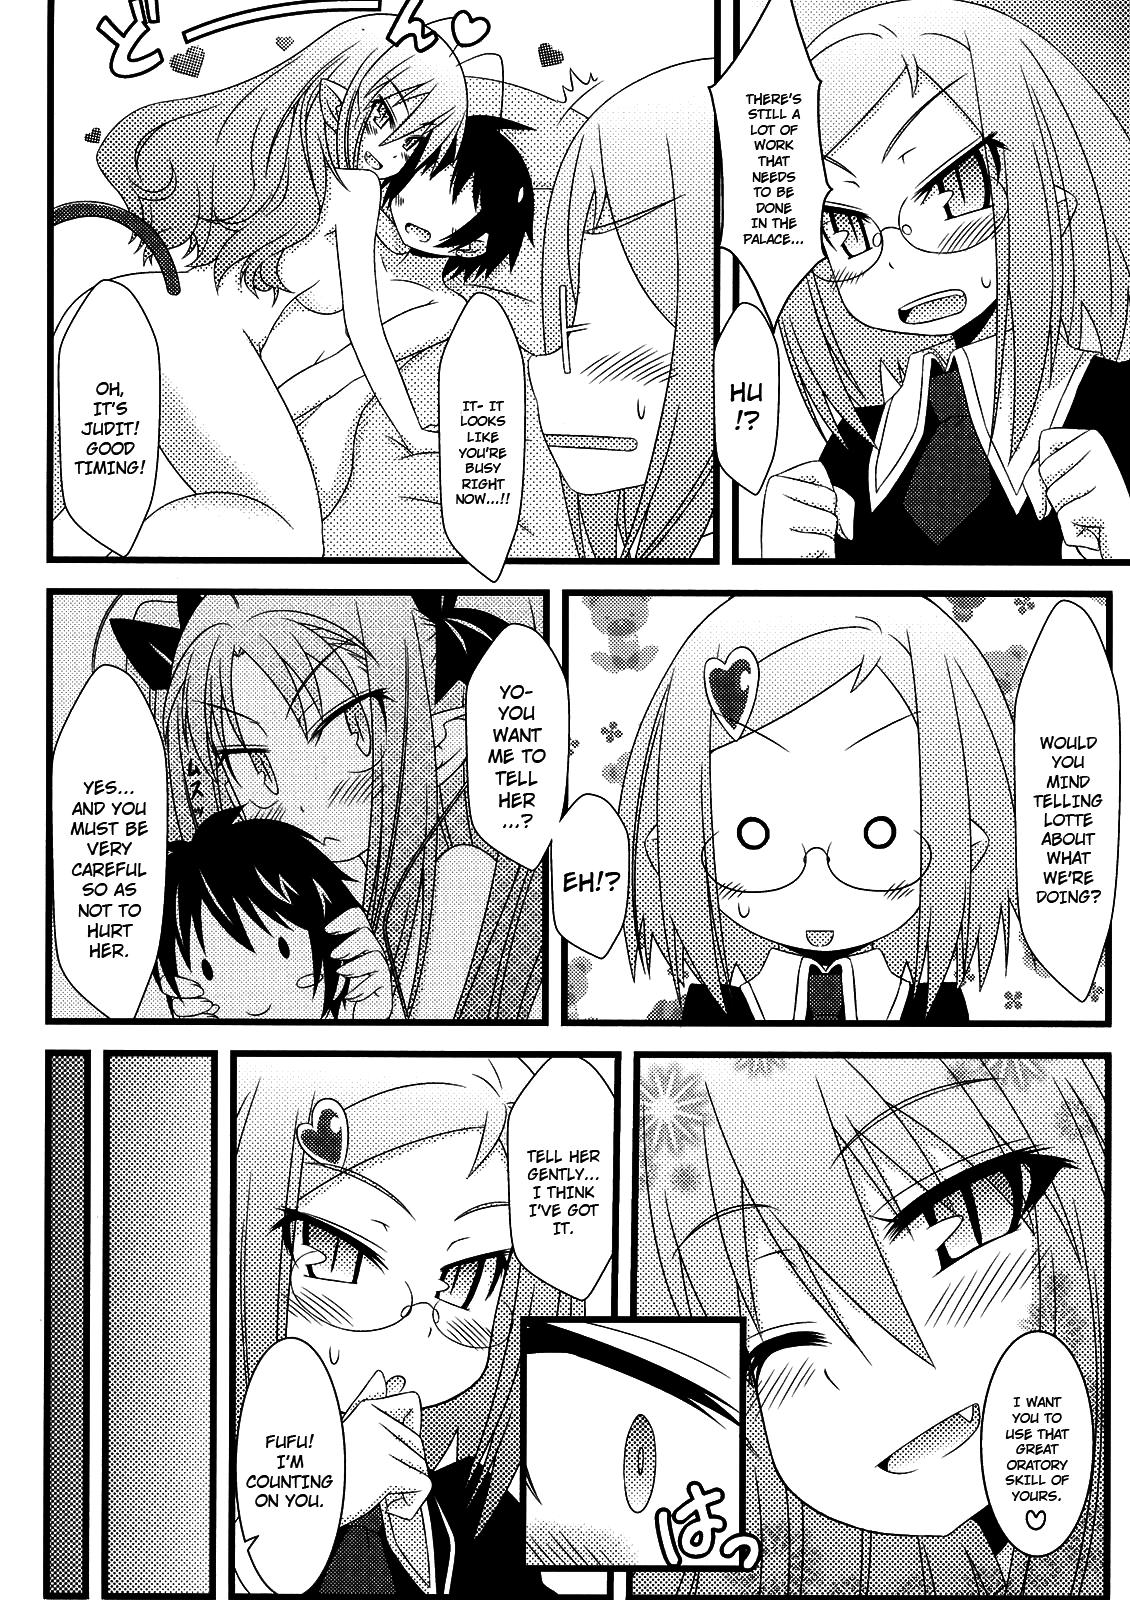 Nerd Hajimete no Omocha! - Lotte no omocha Dotado - Page 11